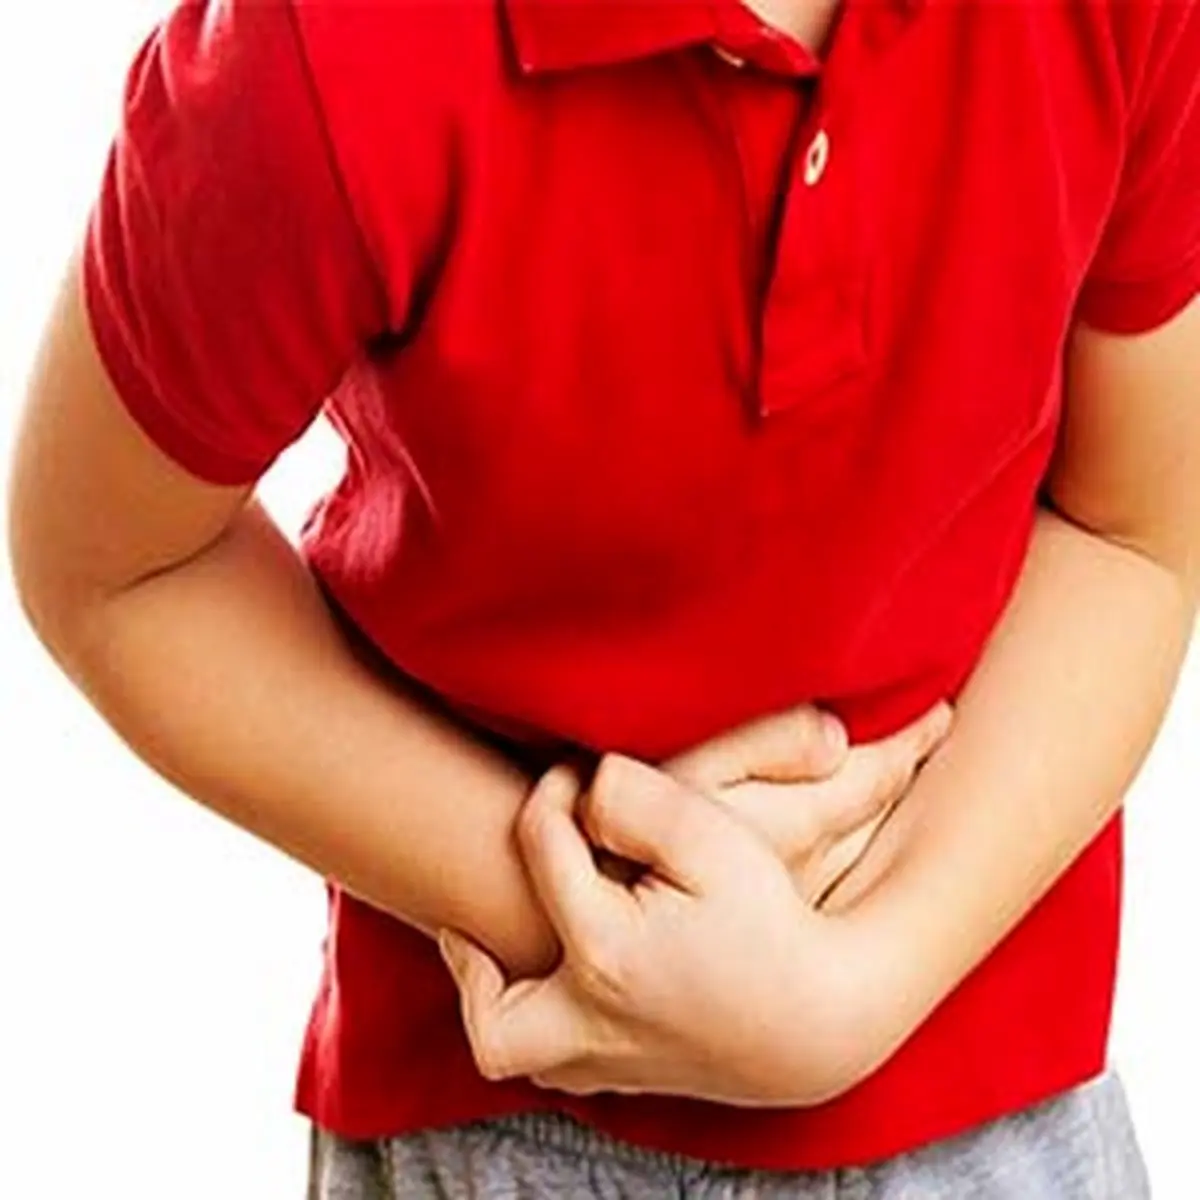 دردهای شکمی نشانه چه بیماری هستند؟